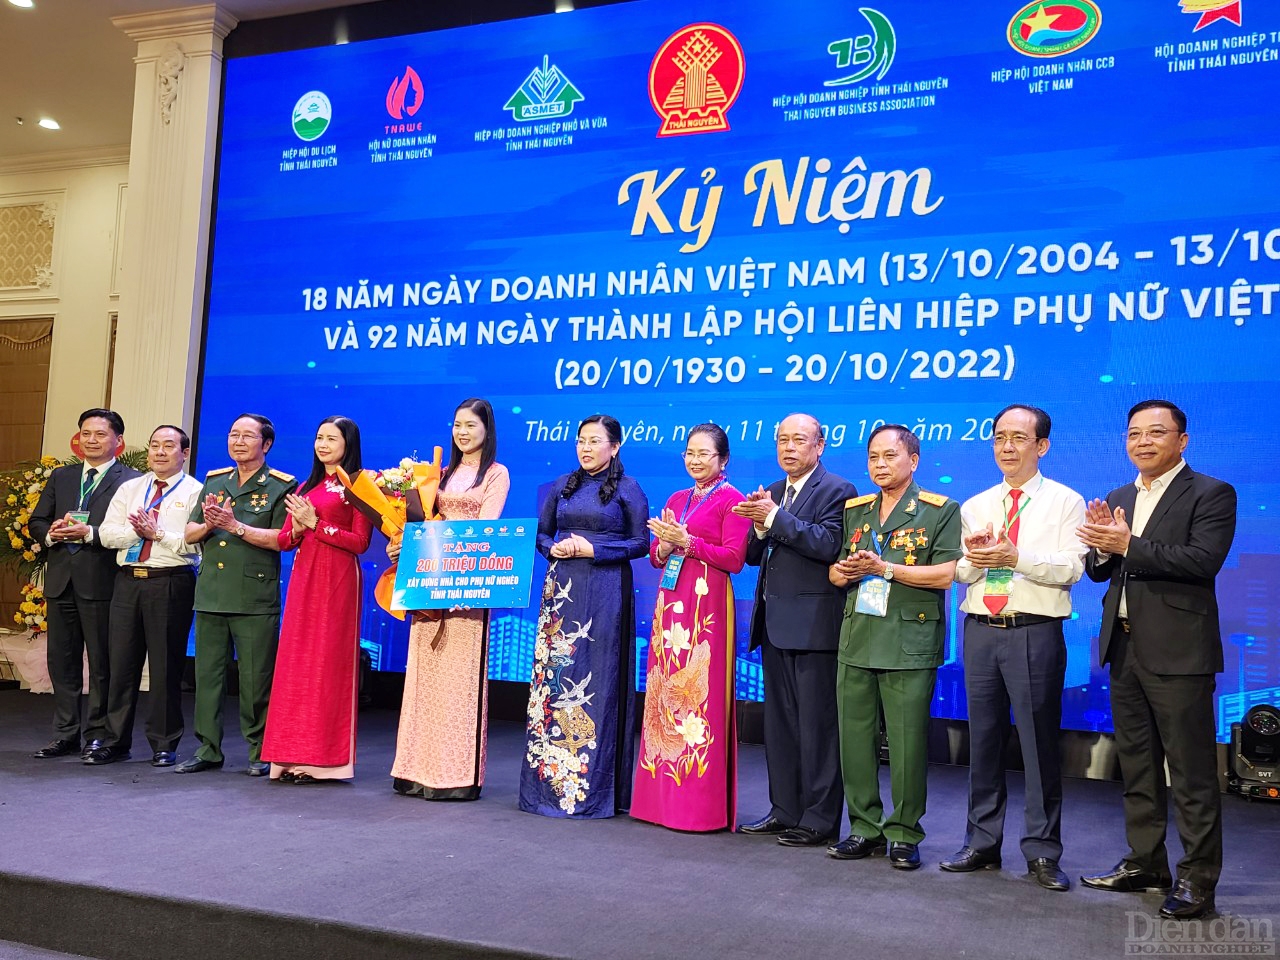 Tại buổi lễ, Ban Tổ chức đã dành tặng 200 triệu đồng để xây dựng nhà tình nghĩa cho phụ nữ nghèo tỉnh Thái Nguyên